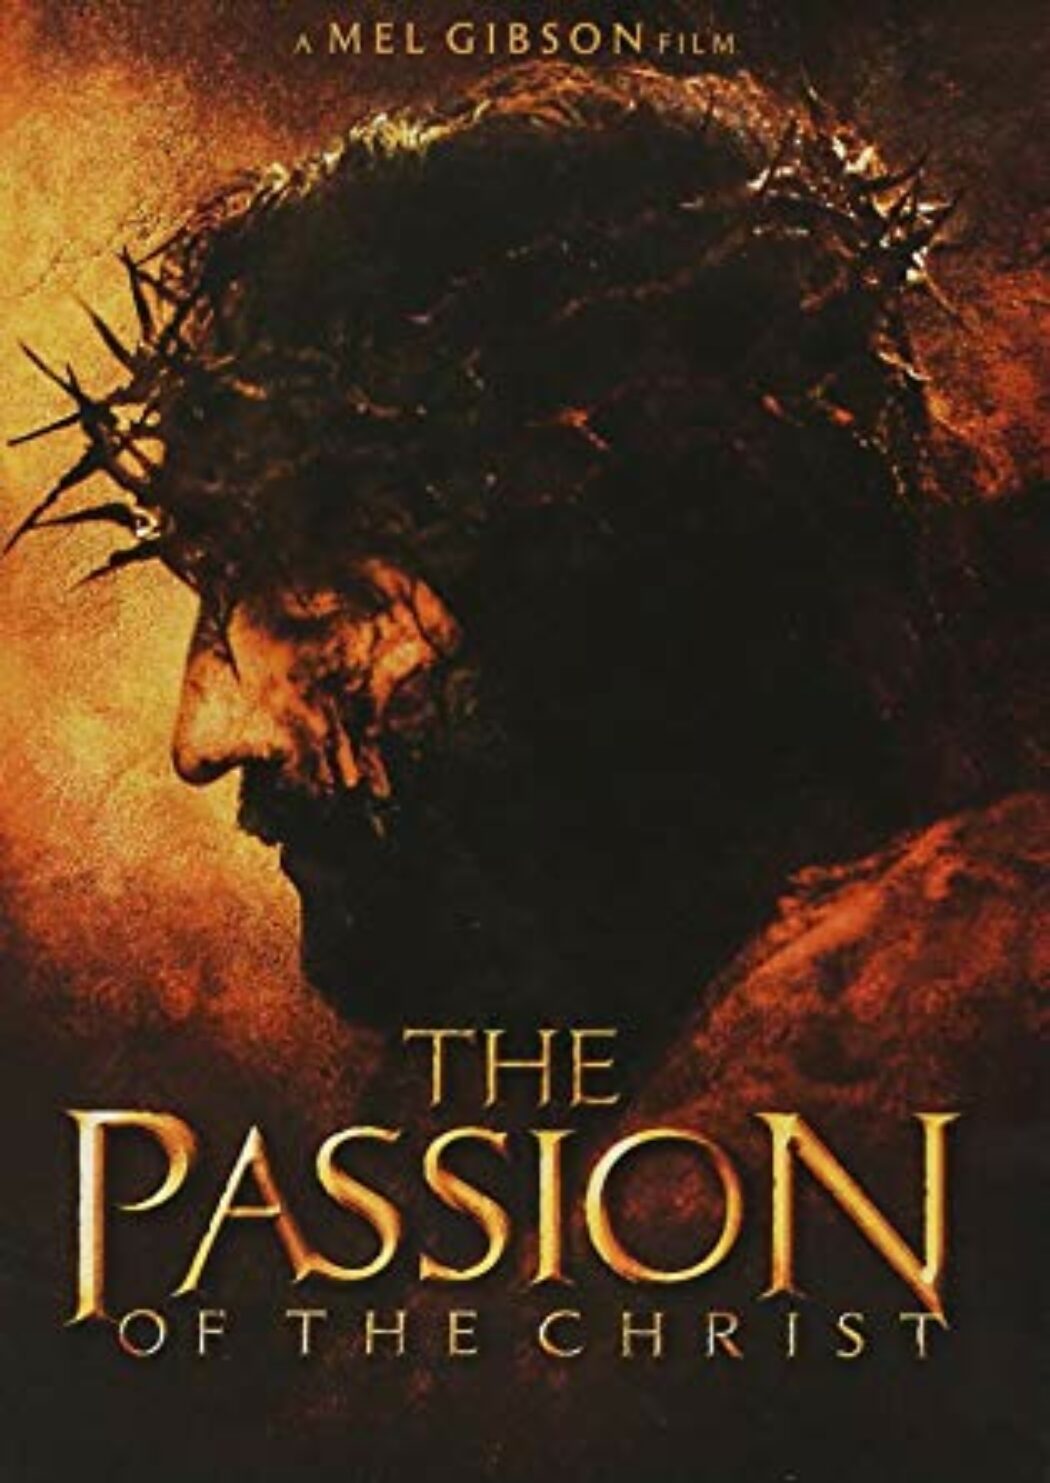 La Passion du Christ de Mel Gibson de retour dans les salles de cinéma à Pâques